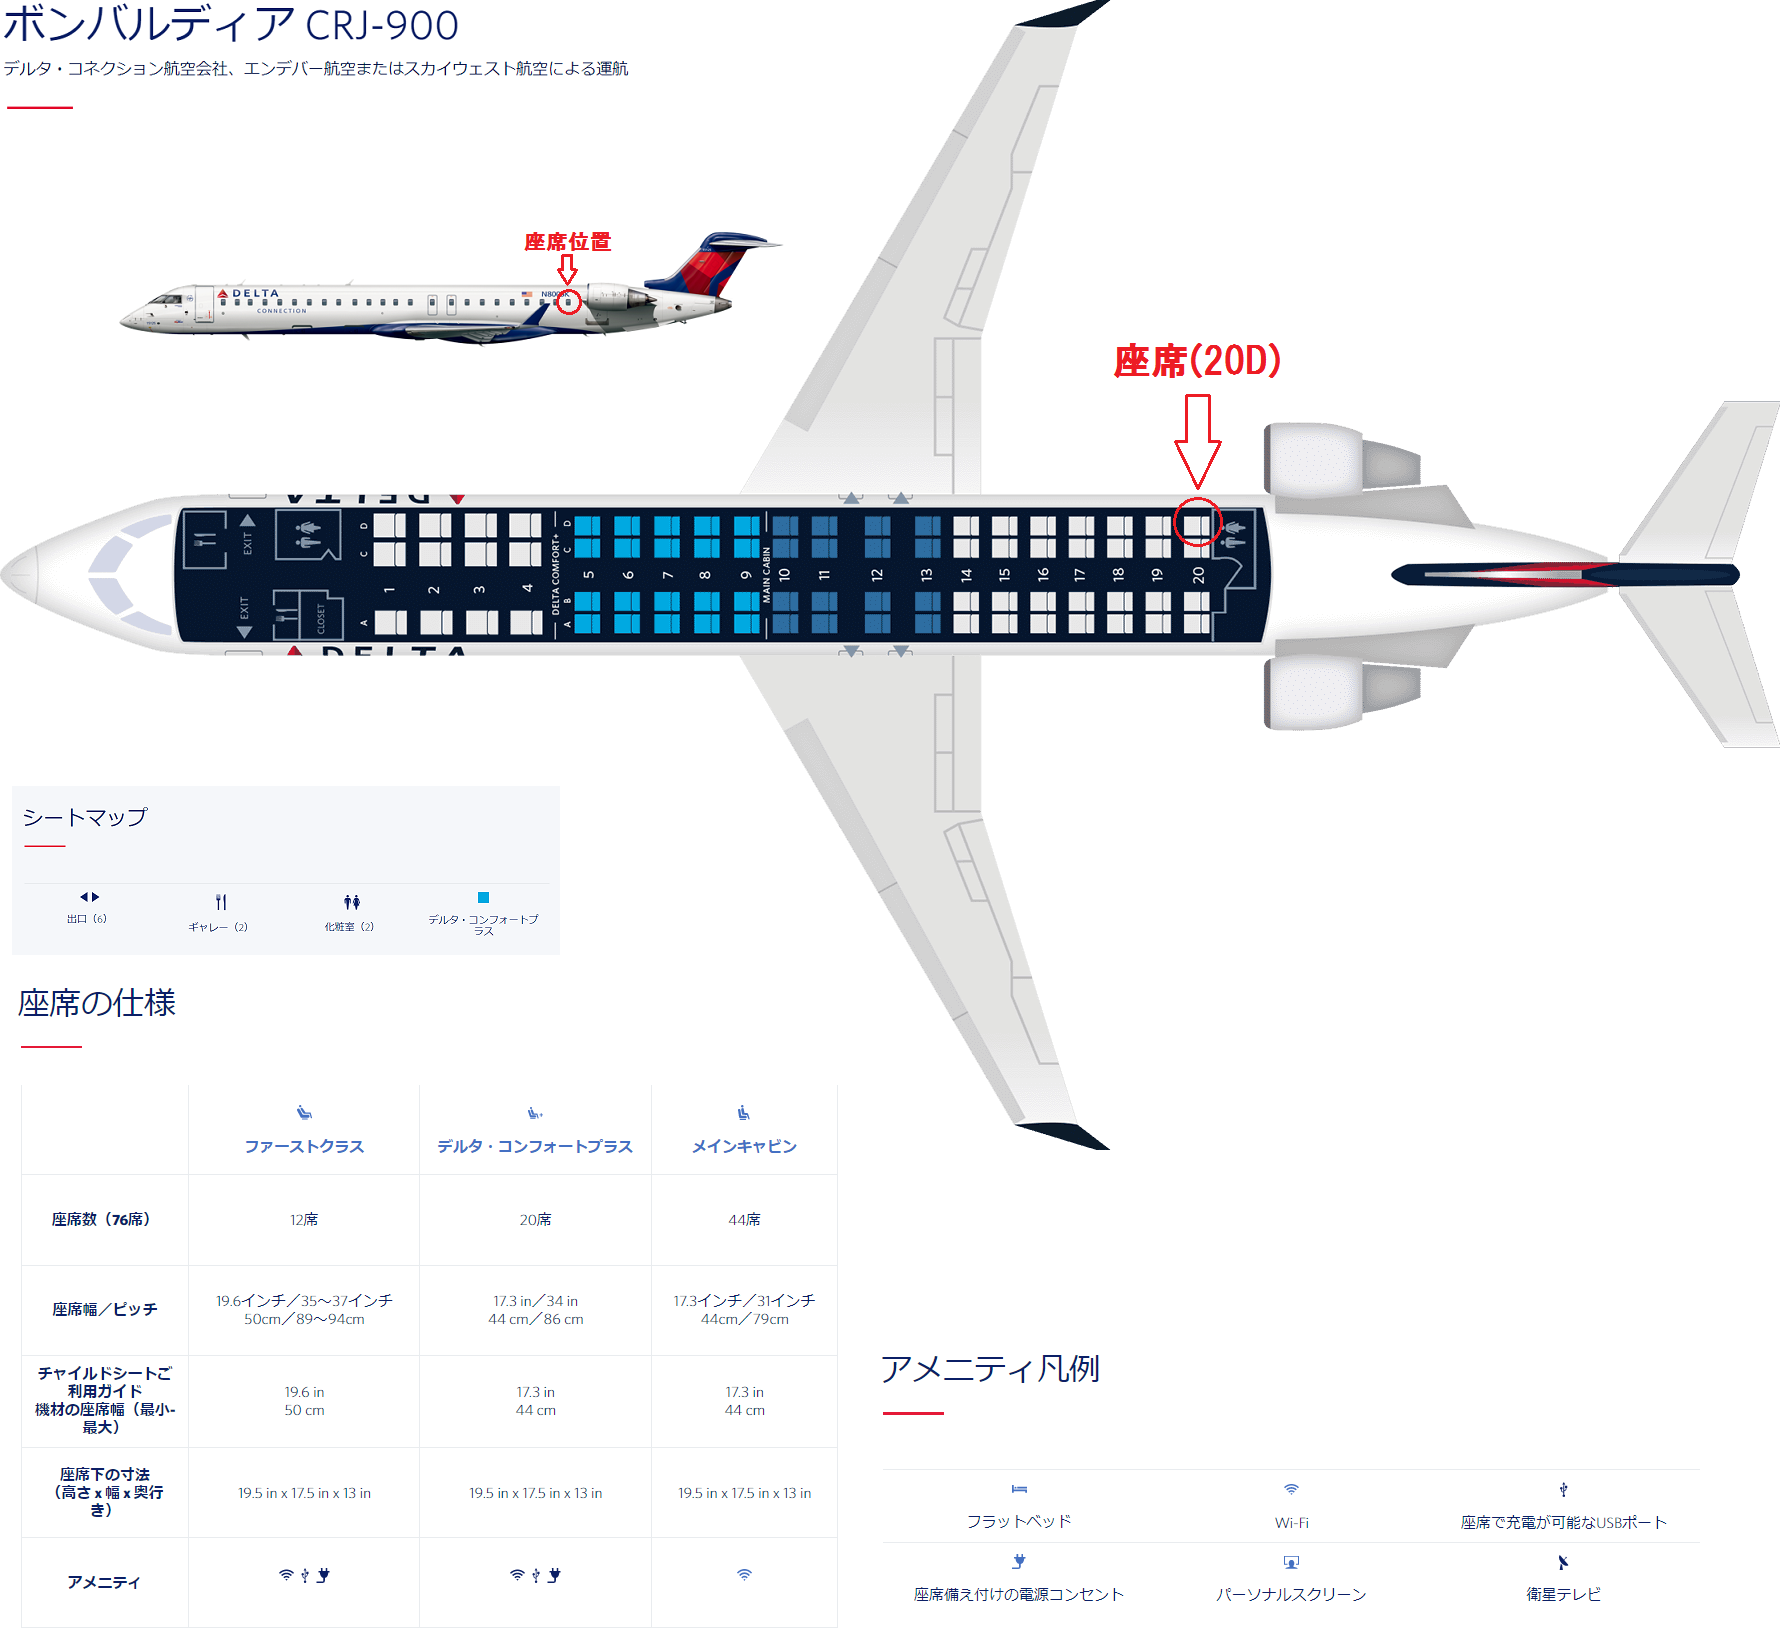 CRJ900型機の座席表と自席の位置